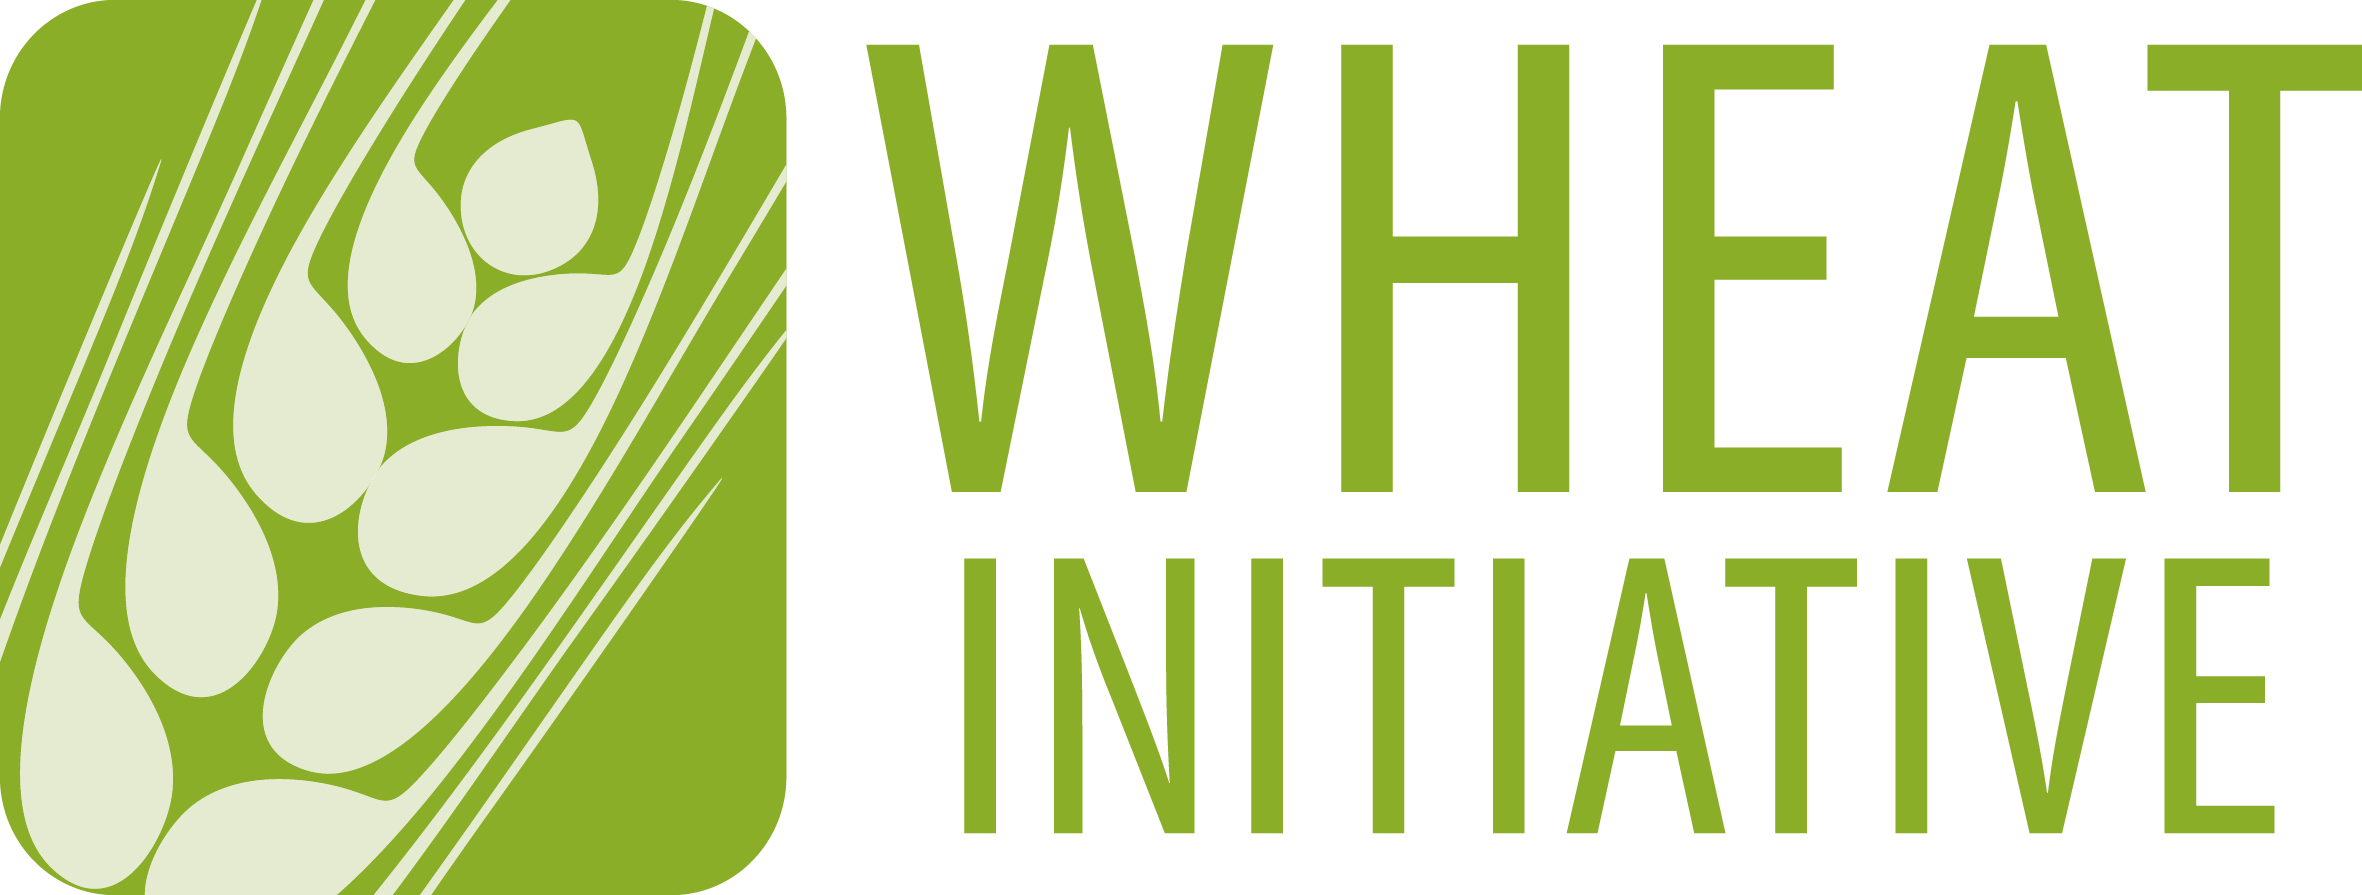 Wheat initiative